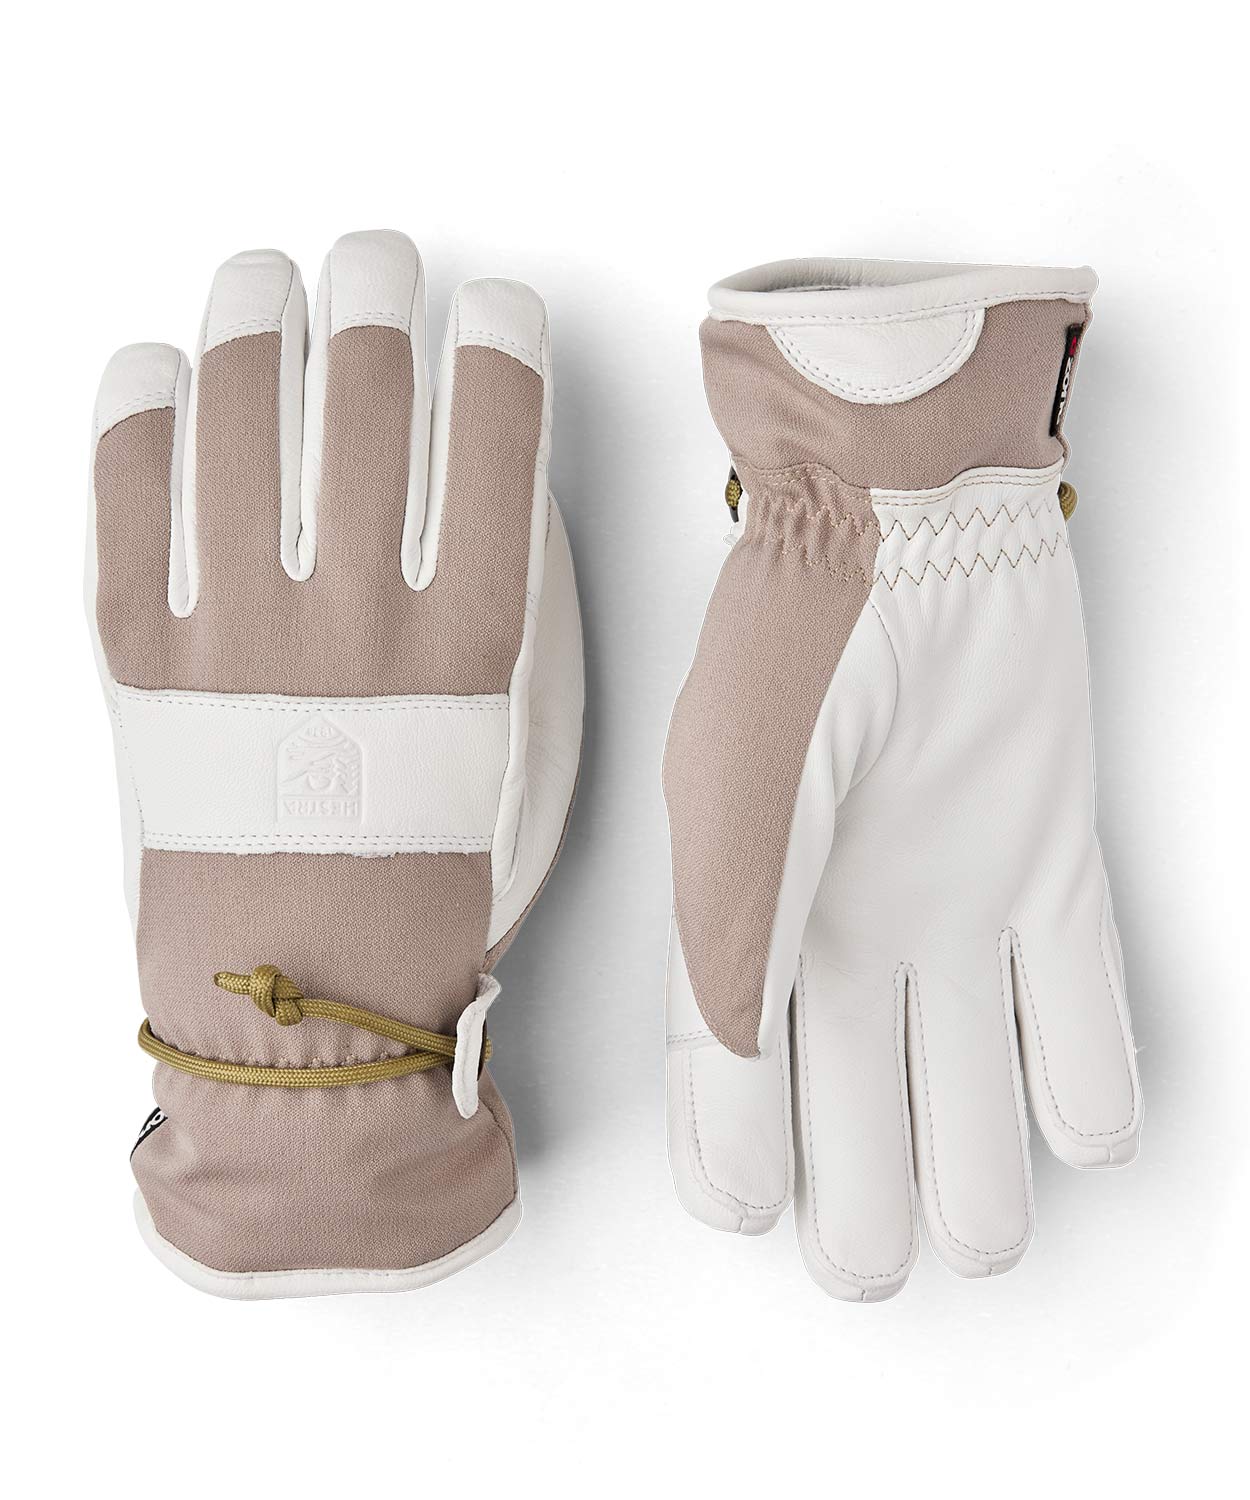 Voss CZone 5 finger Glove